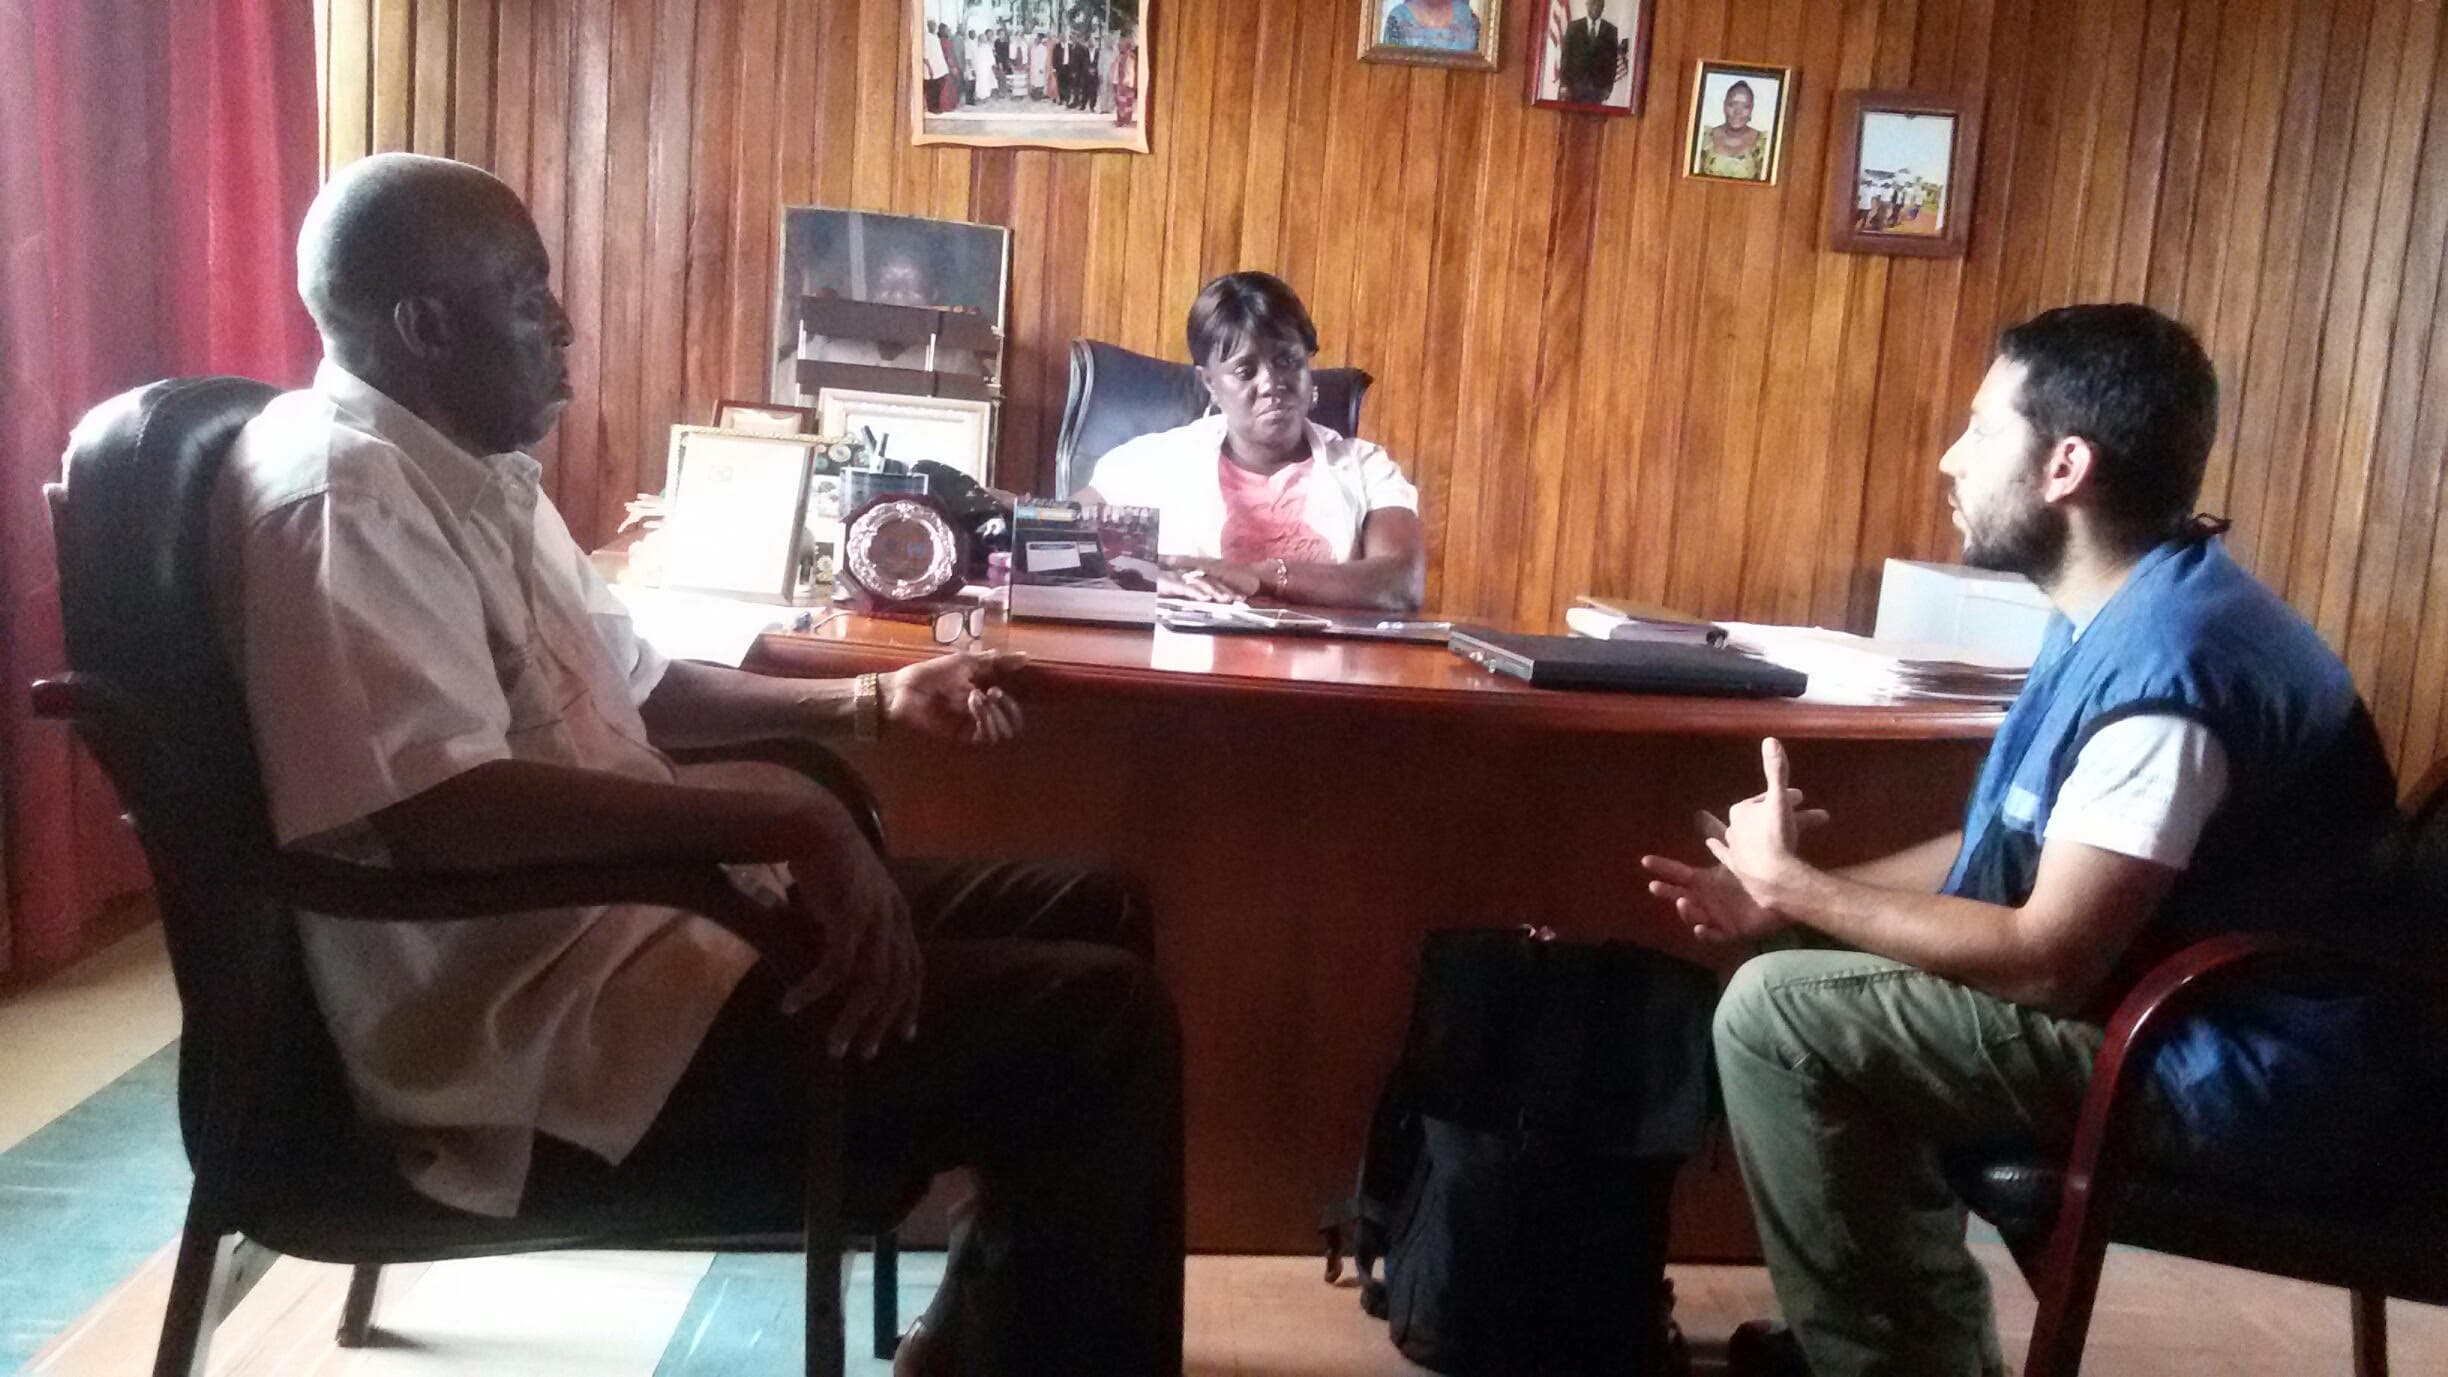 האפידמיולוג מייקל אדלשטיין (מימין) מתדרך פוליטיקאים ליברים במהלך התפרצות האבולה ב-2015 במערב אפריקה (צילום: באדיבות מייקל אדלשטיין)